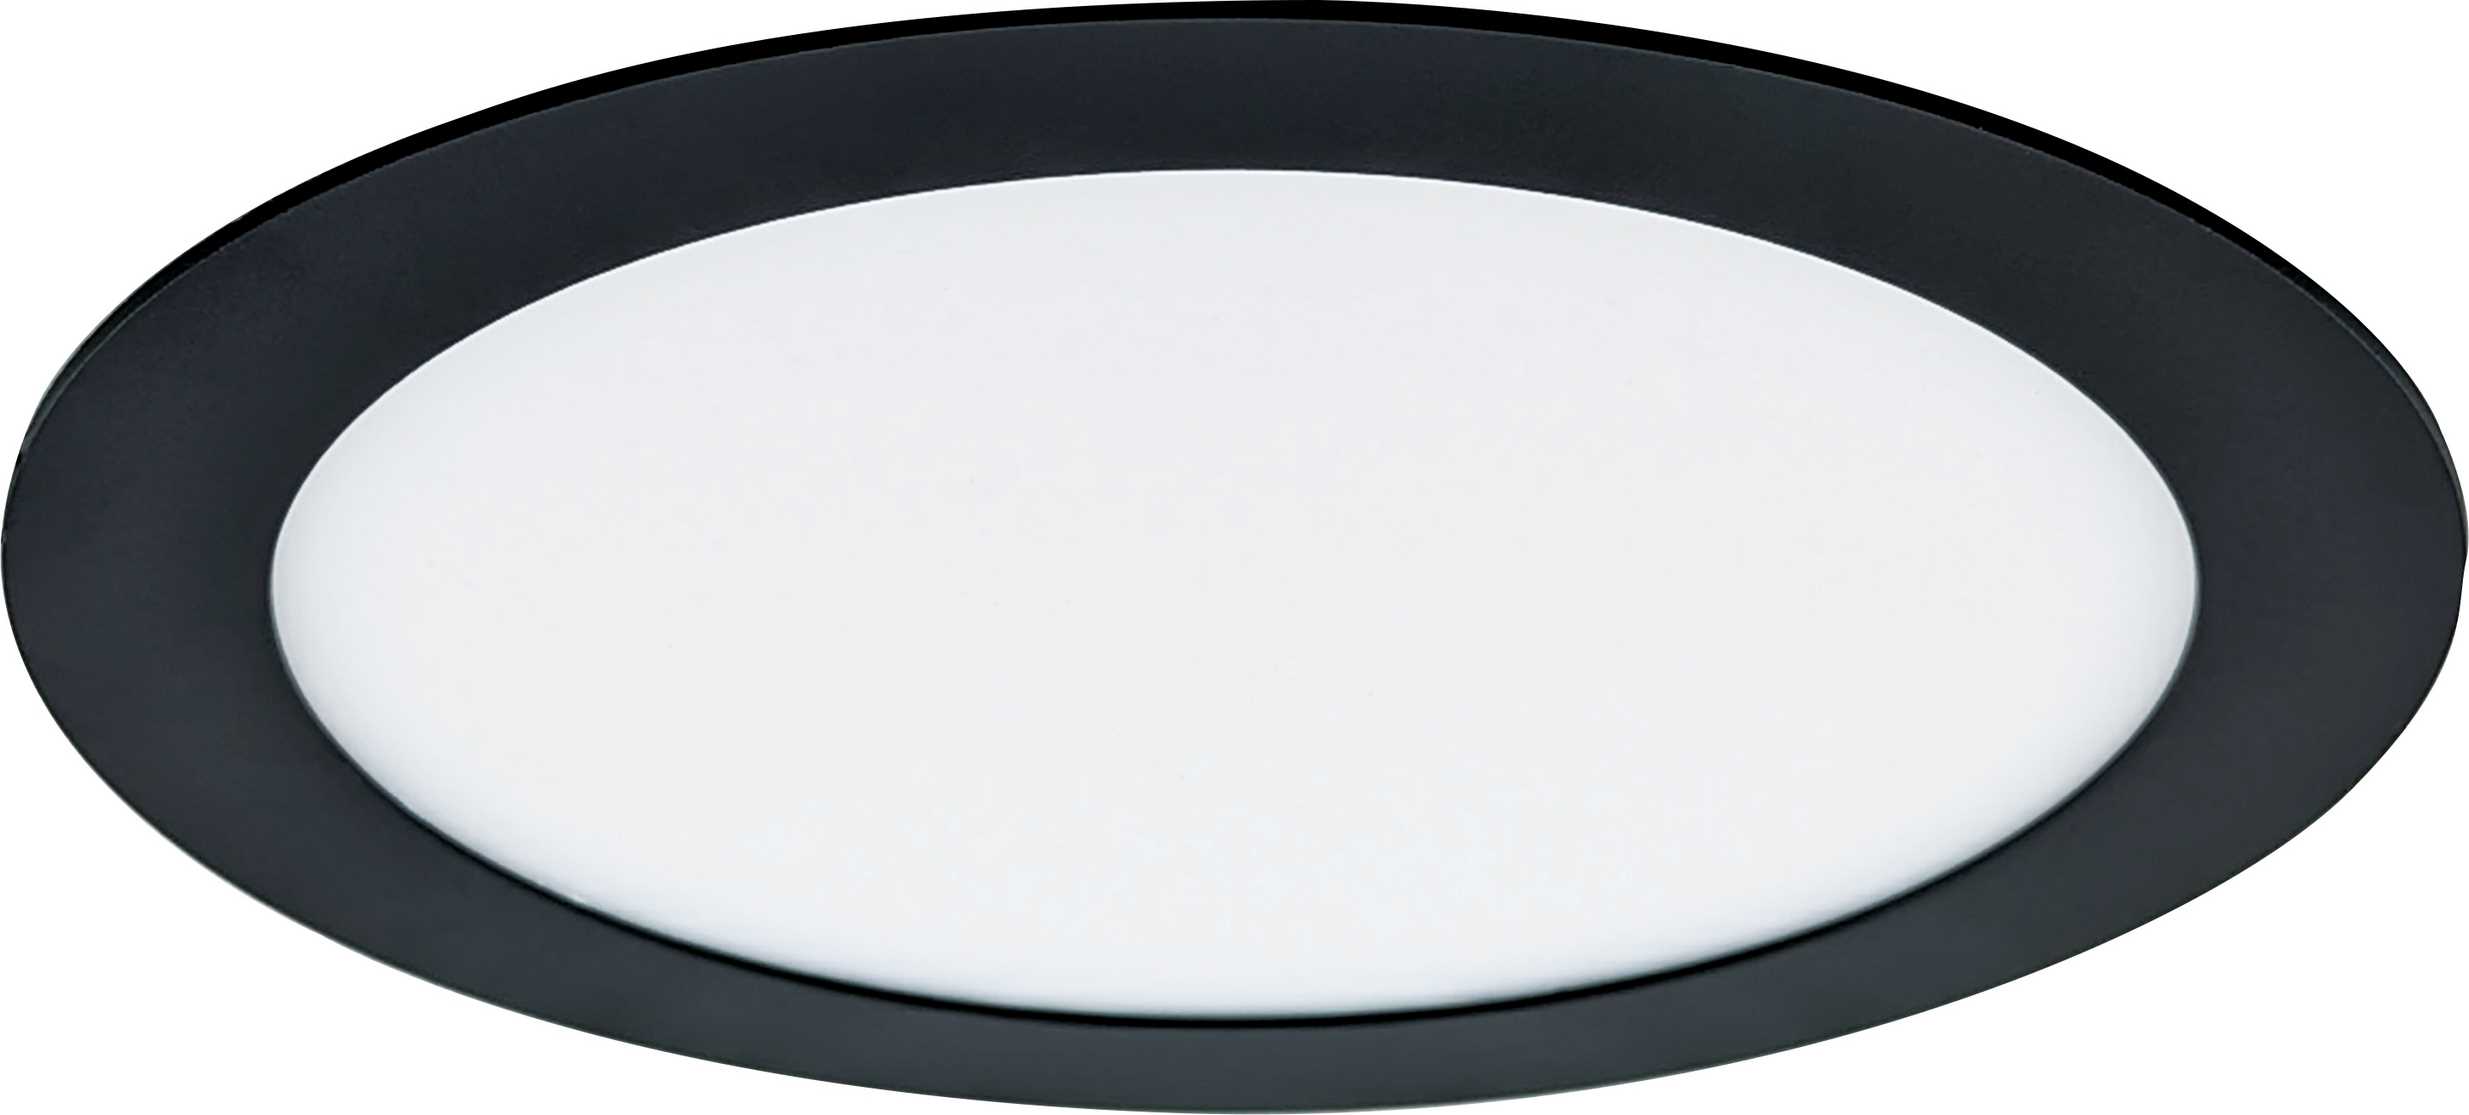 LED vestavné svítidlo LED90 VEGA-R Black 18W WW, 2800K, 1350lm, IP44/20, Greenlux GXDW359 - zvìtšit obrázek